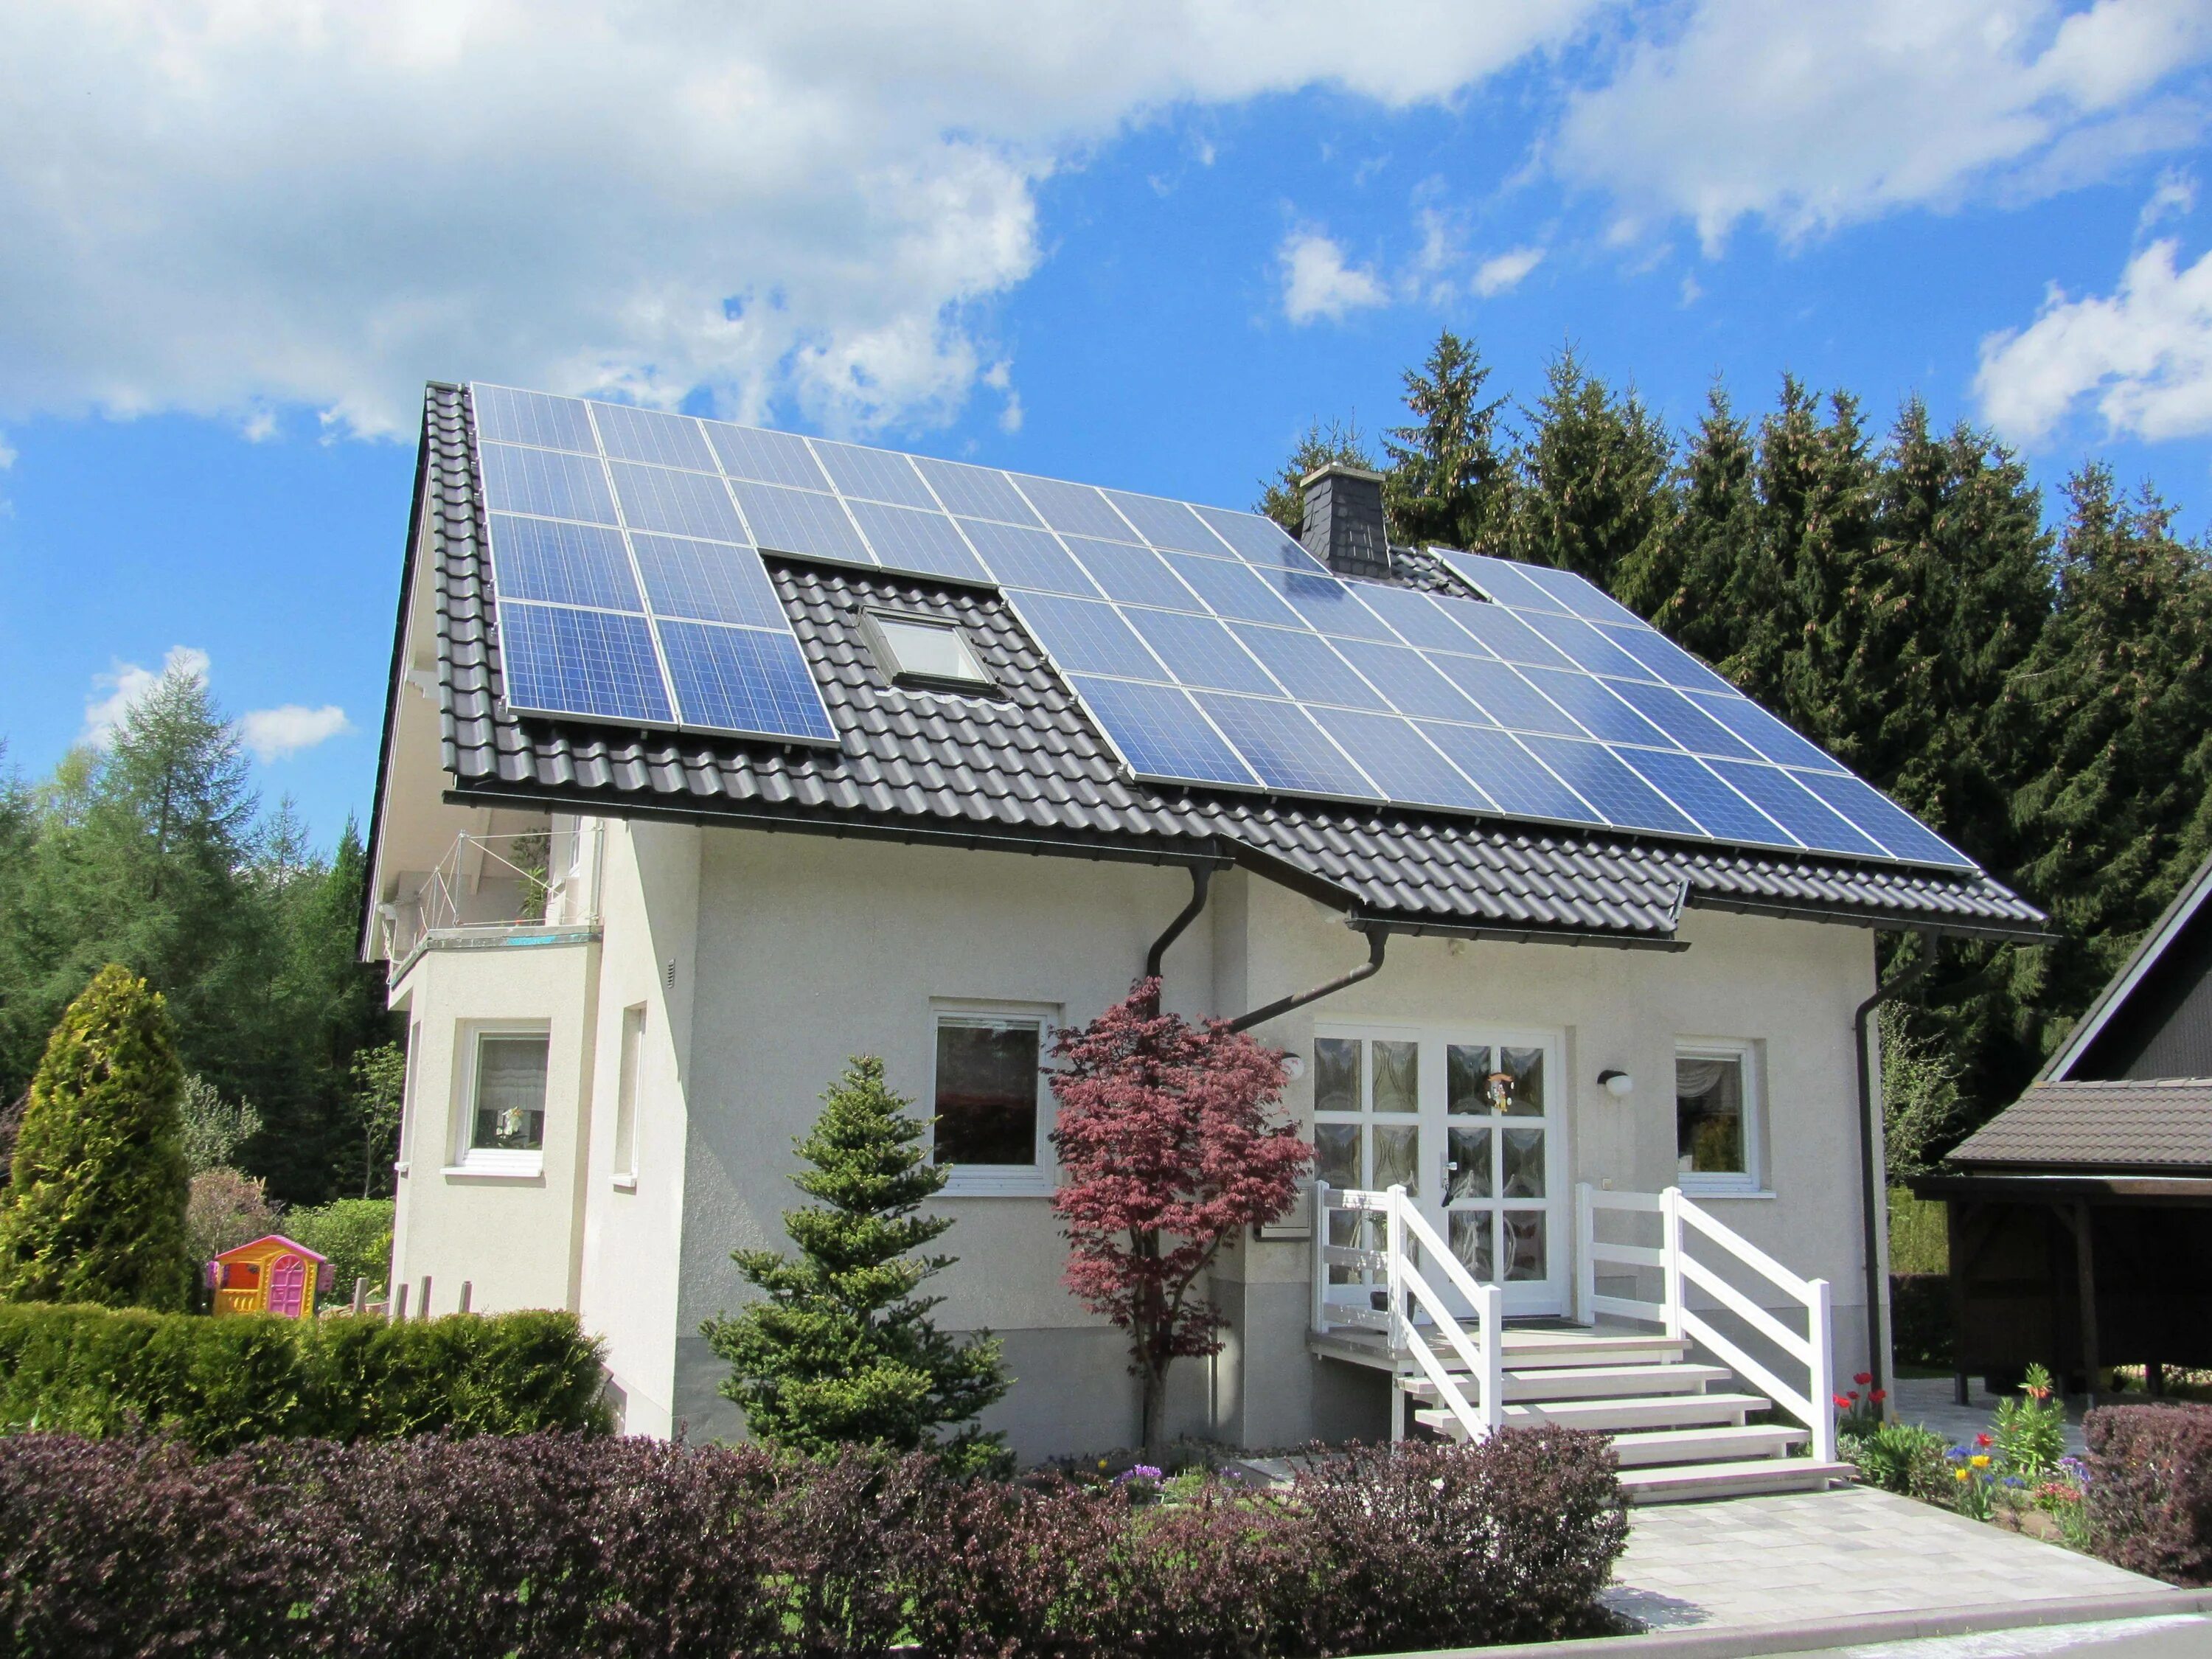 Solar Energy Солнечная батарея. Солнечные электростанции Солар Системс. Солнечная батарея на 20квт. ЭКОДОМ С солнечными батареями. Солнечный дом друзья